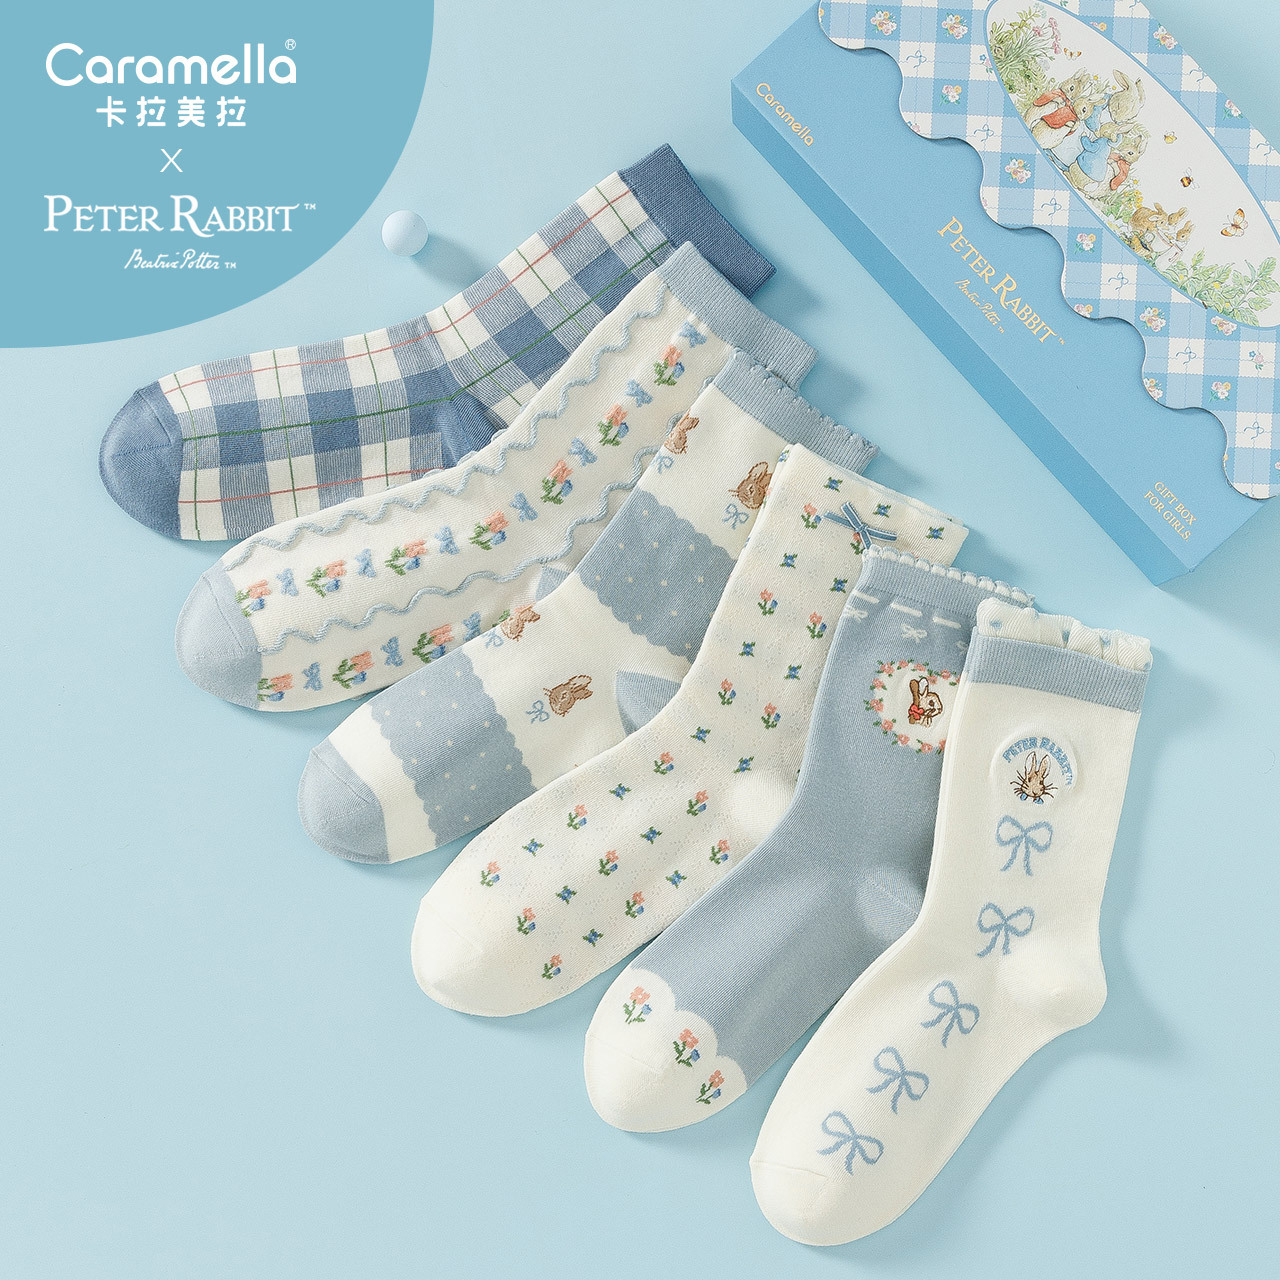 Caramella Rabbit Joint Socks Women's 6 Pairs Women's Gift Box Socks Korean College Style Middle Tube Cotton Socks